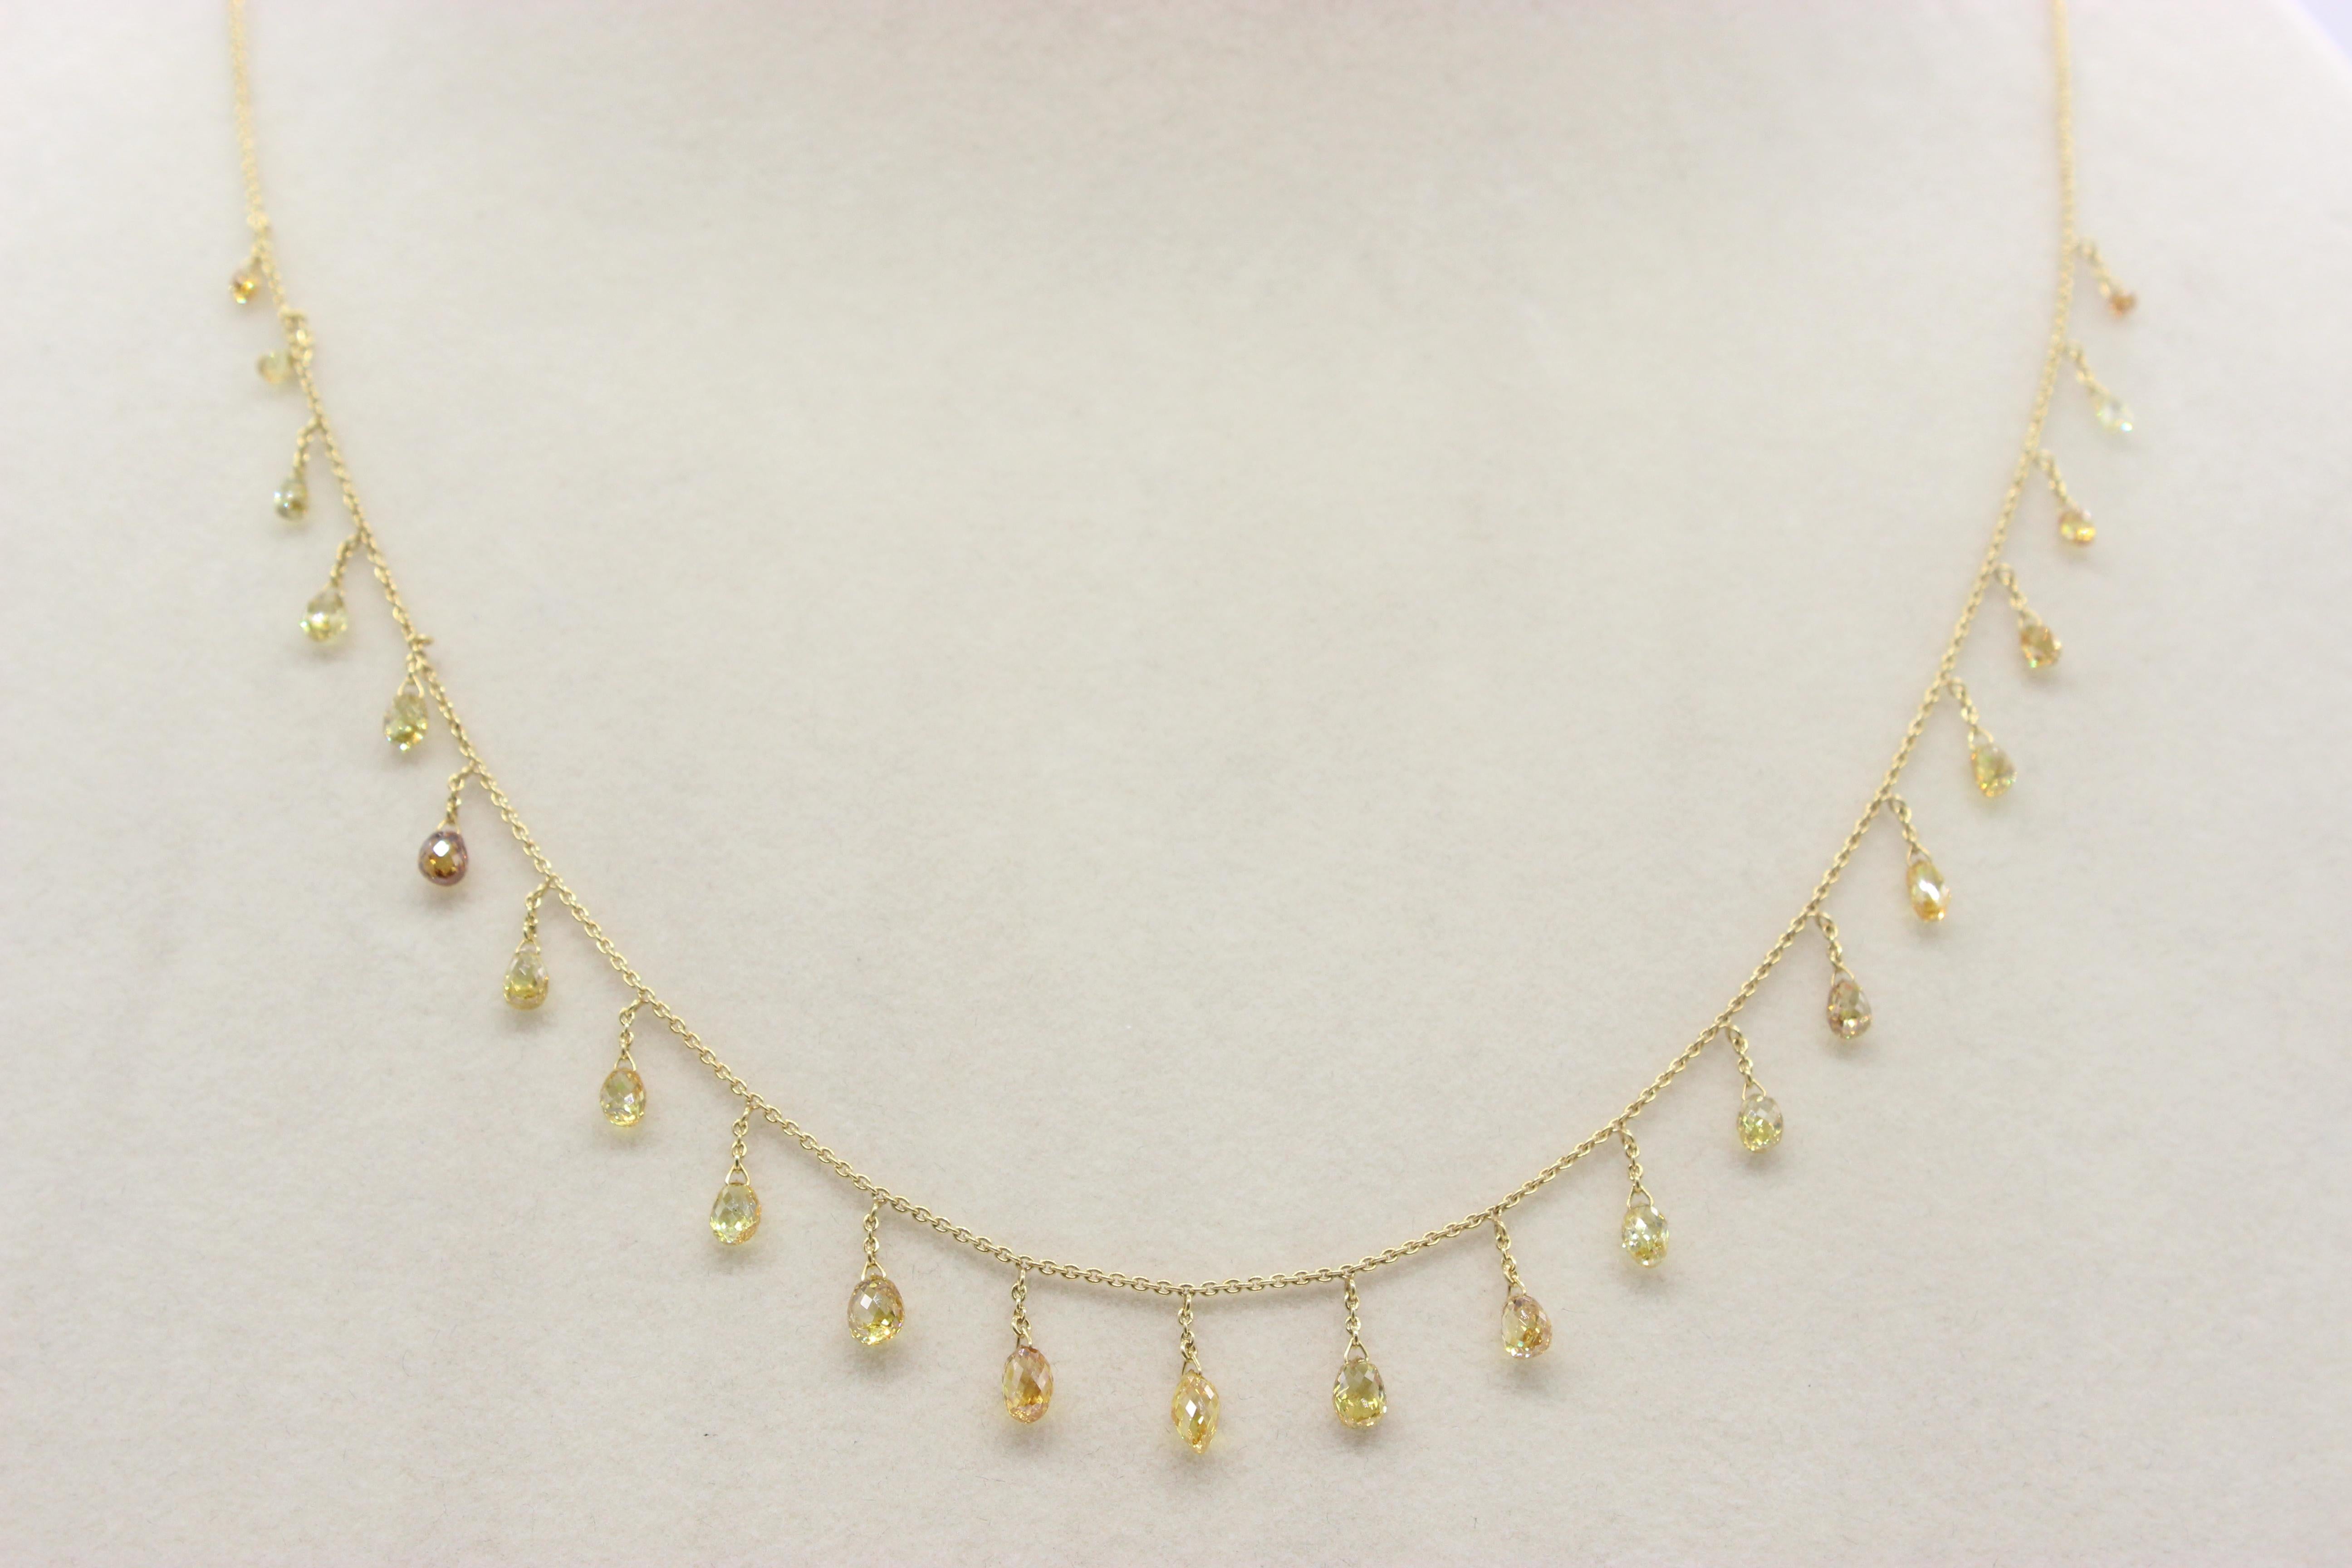 Briolette Cut PANIM 5.30 Carat Fancy Color Diamond Briolette 18 Karat Yellow Gold Necklace For Sale